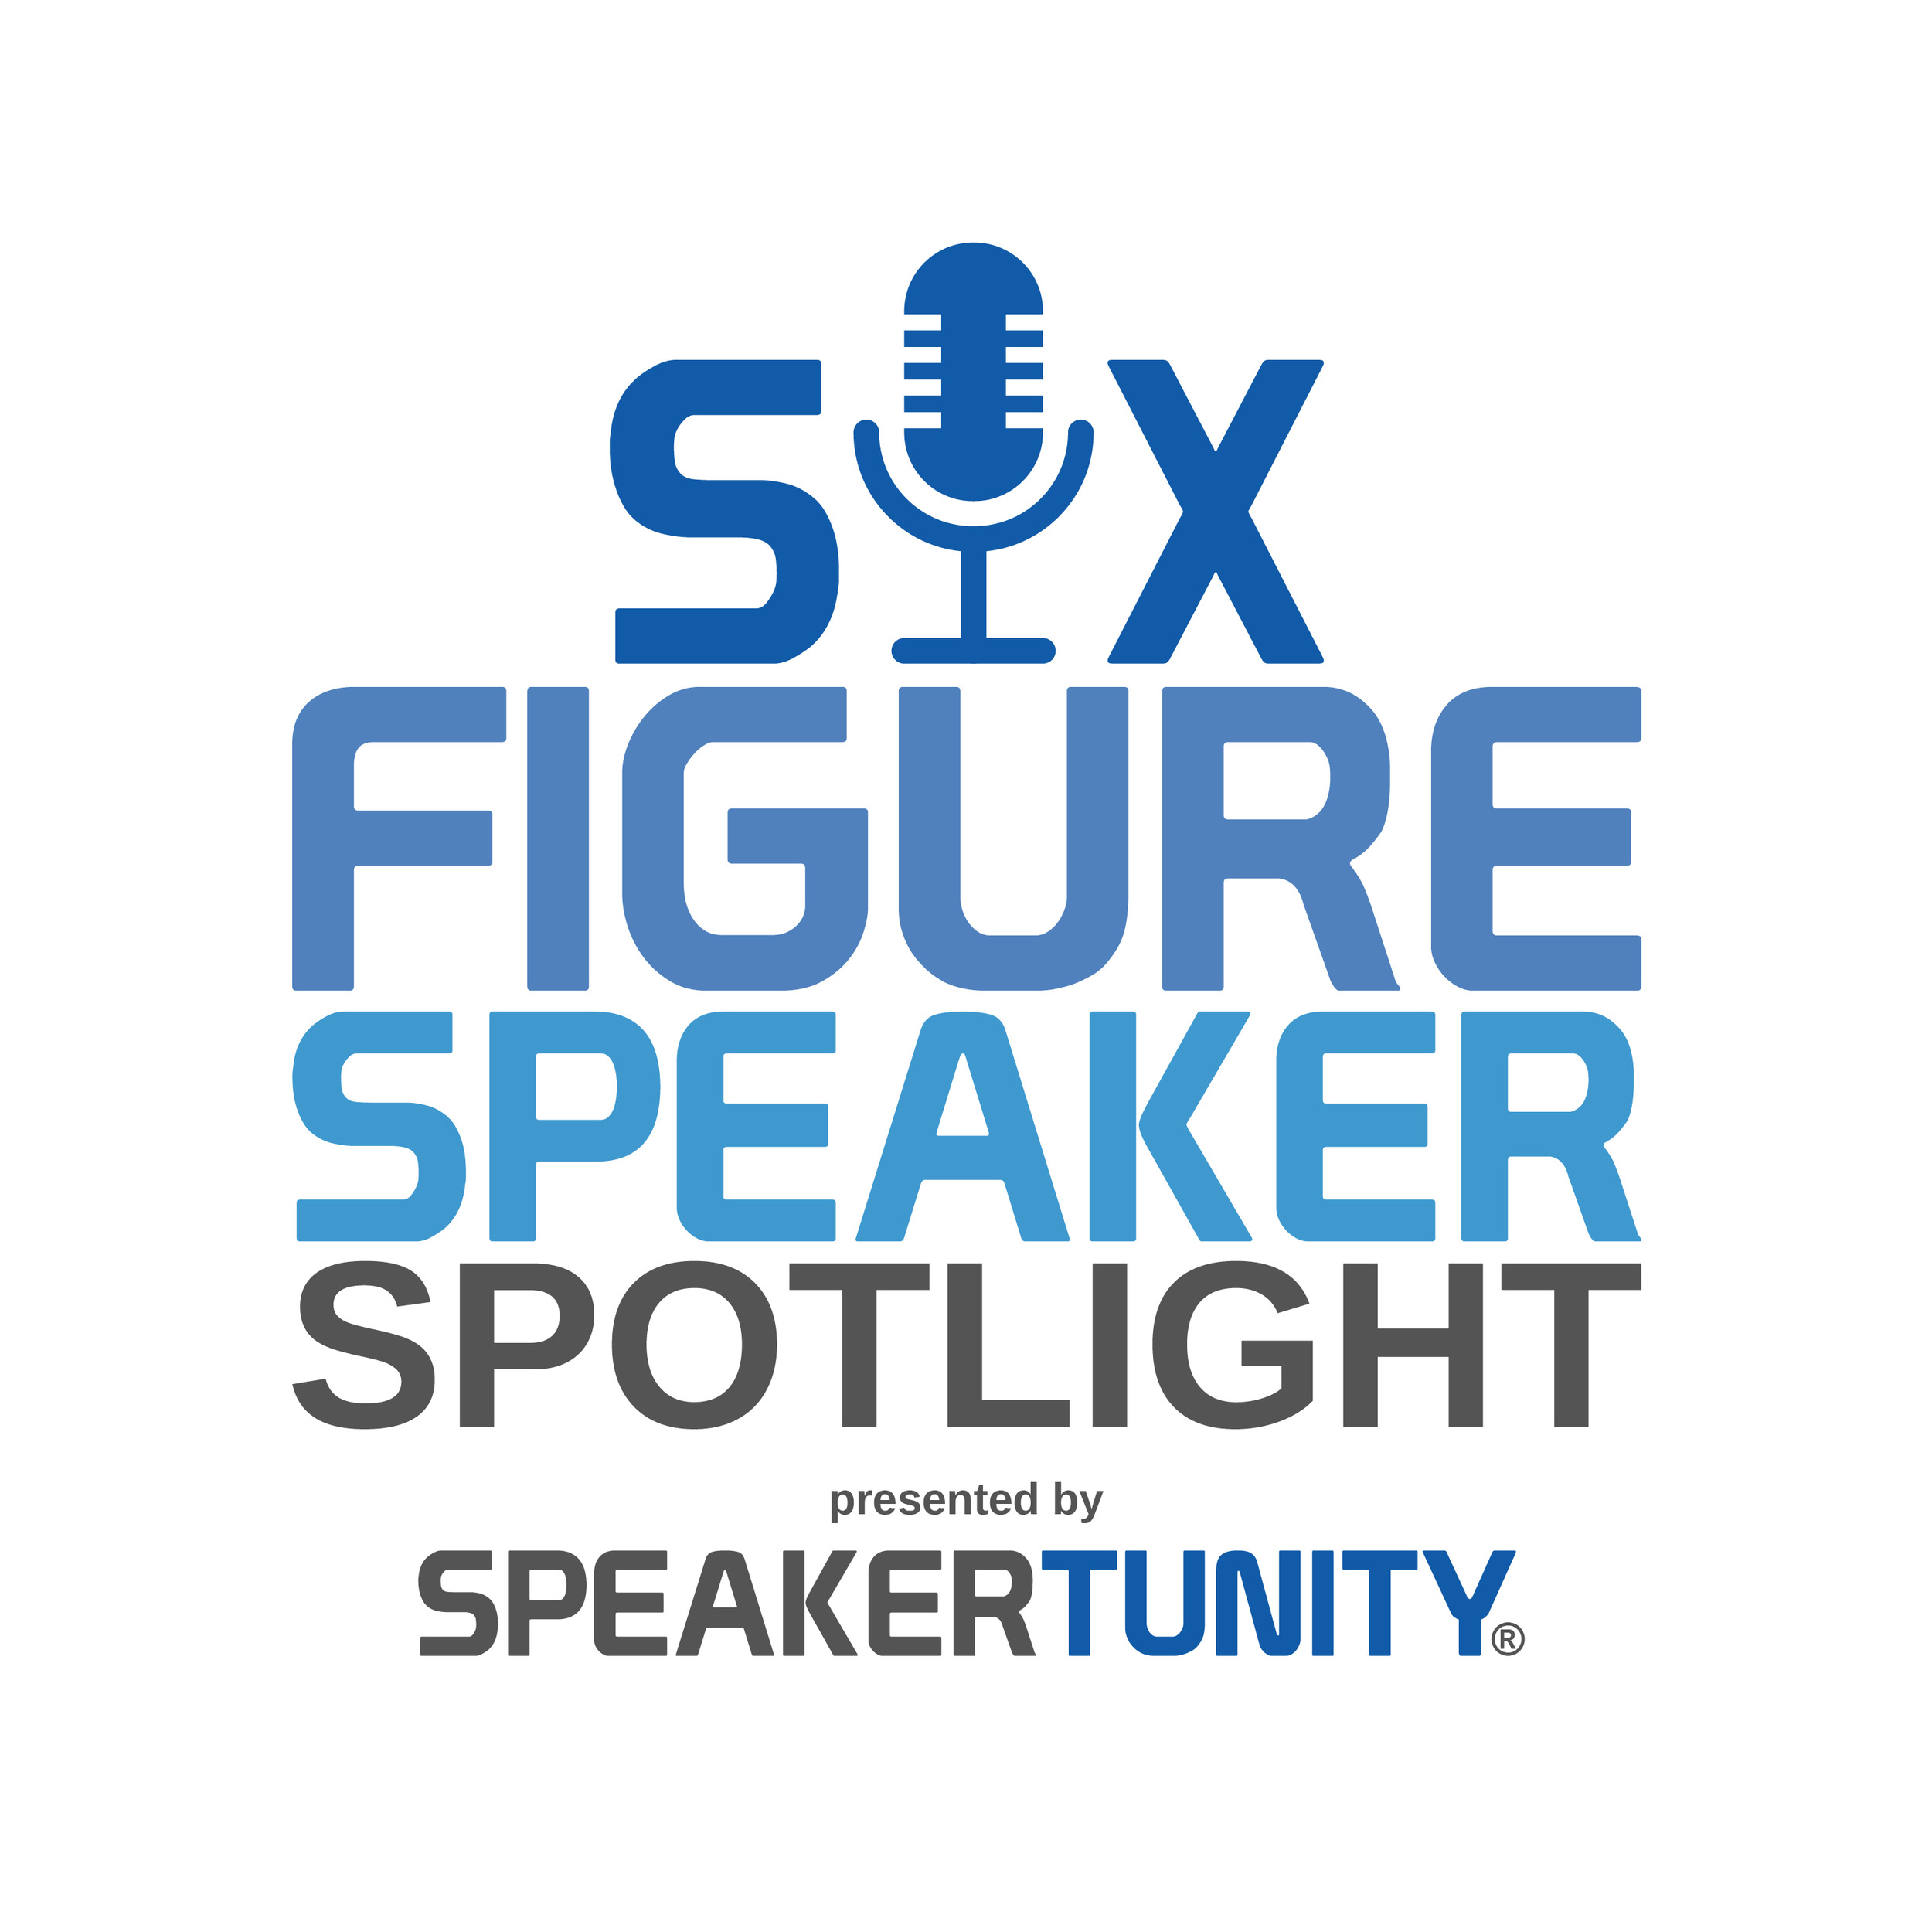 Artwork for Six-Figure Speaker Spotlight